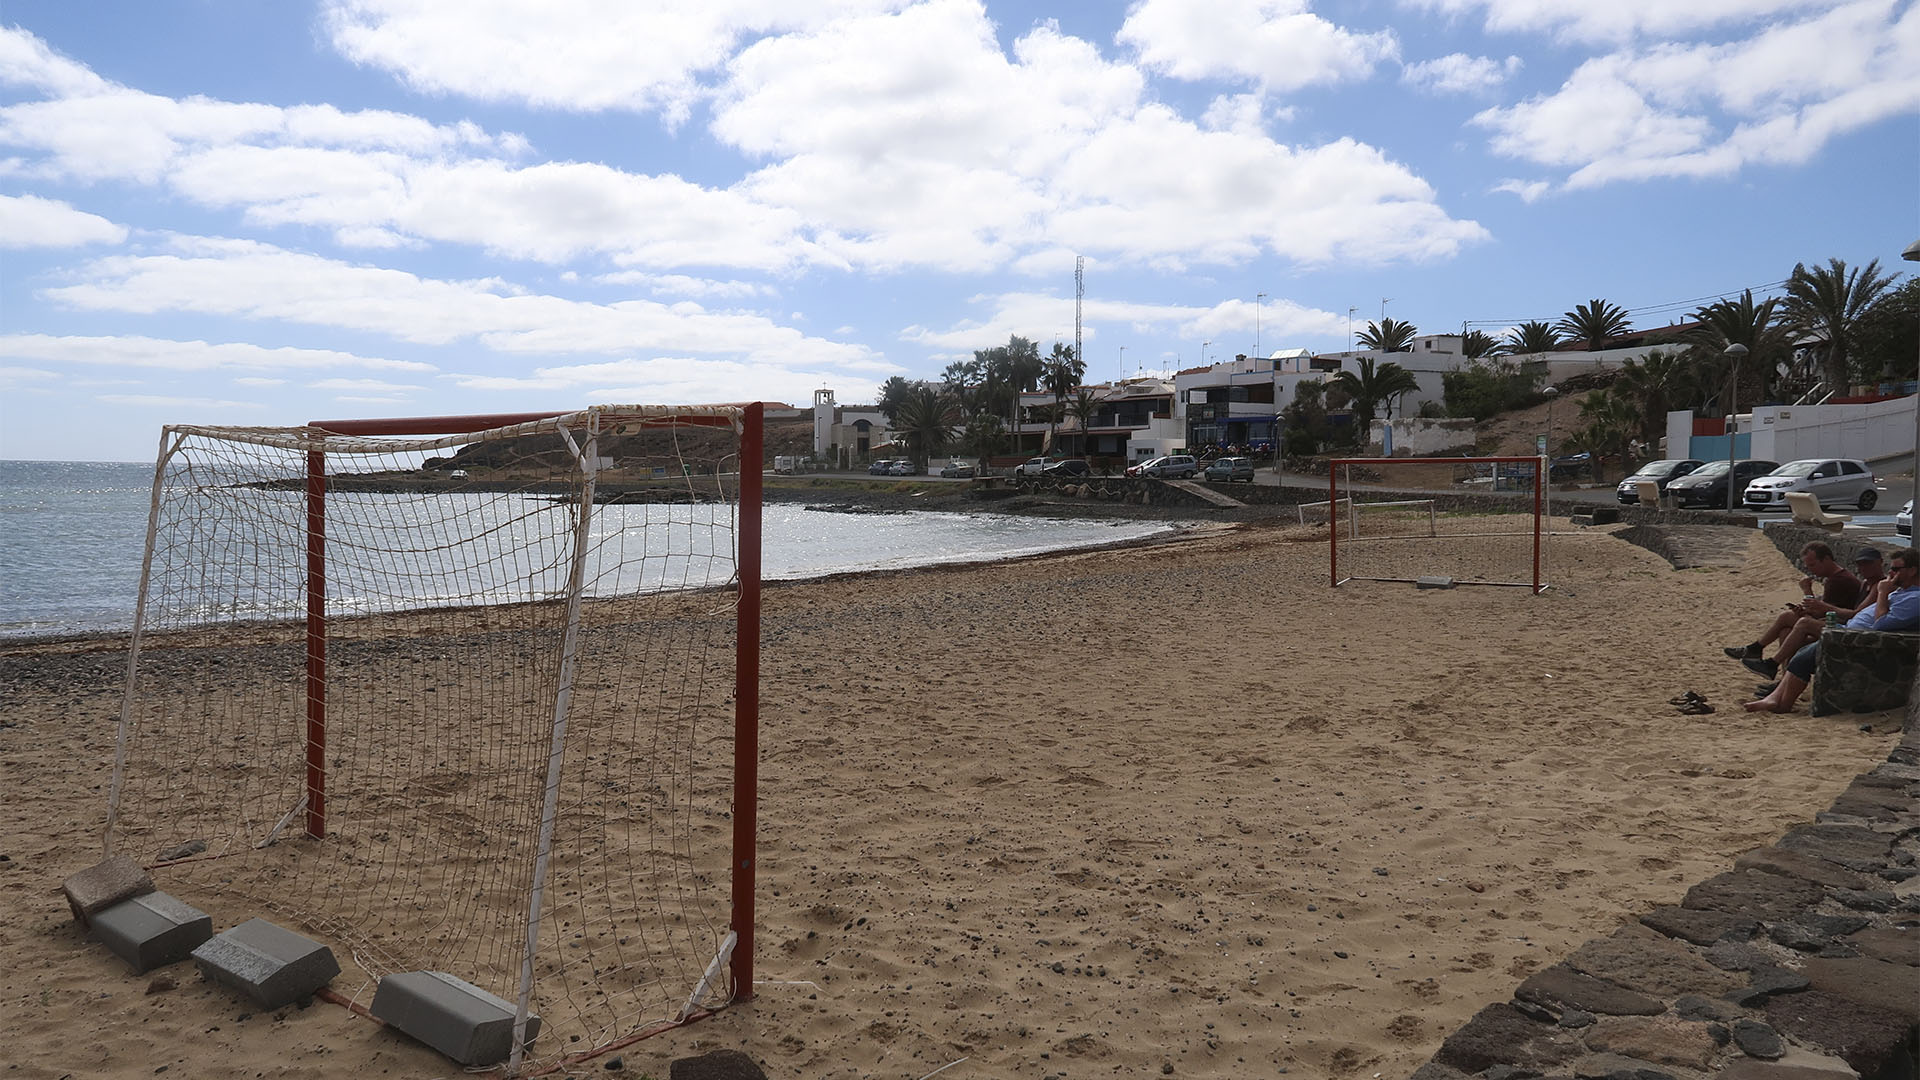 ▷ Las Salinas del Carmen Beach in Fuerteventura - Fuerteventura playas